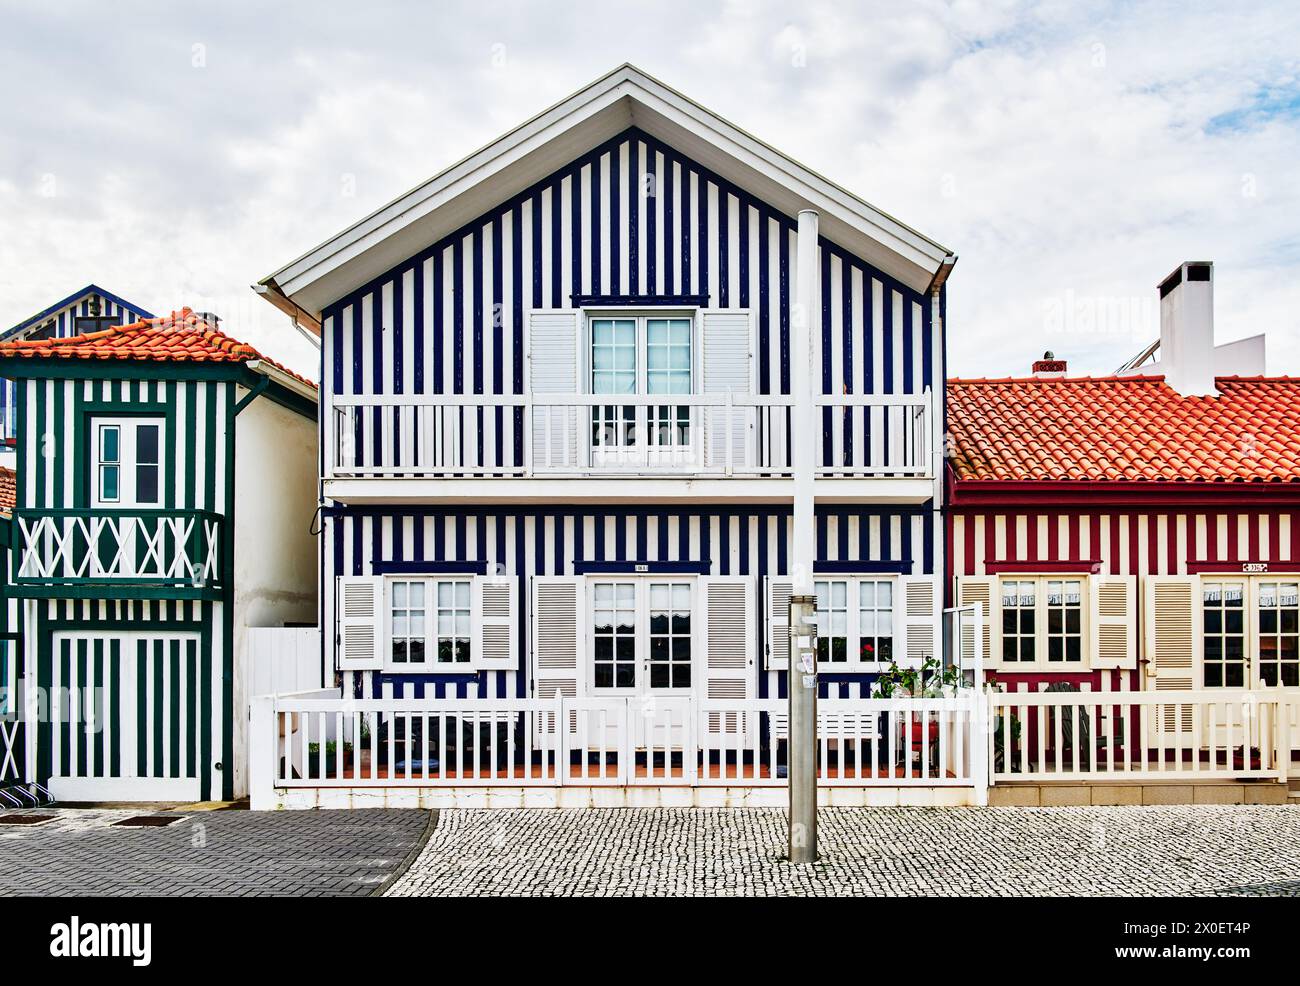 Maisons colorées typiques de la Costa Nova d'Aveiro, Portugal, Europe Banque D'Images